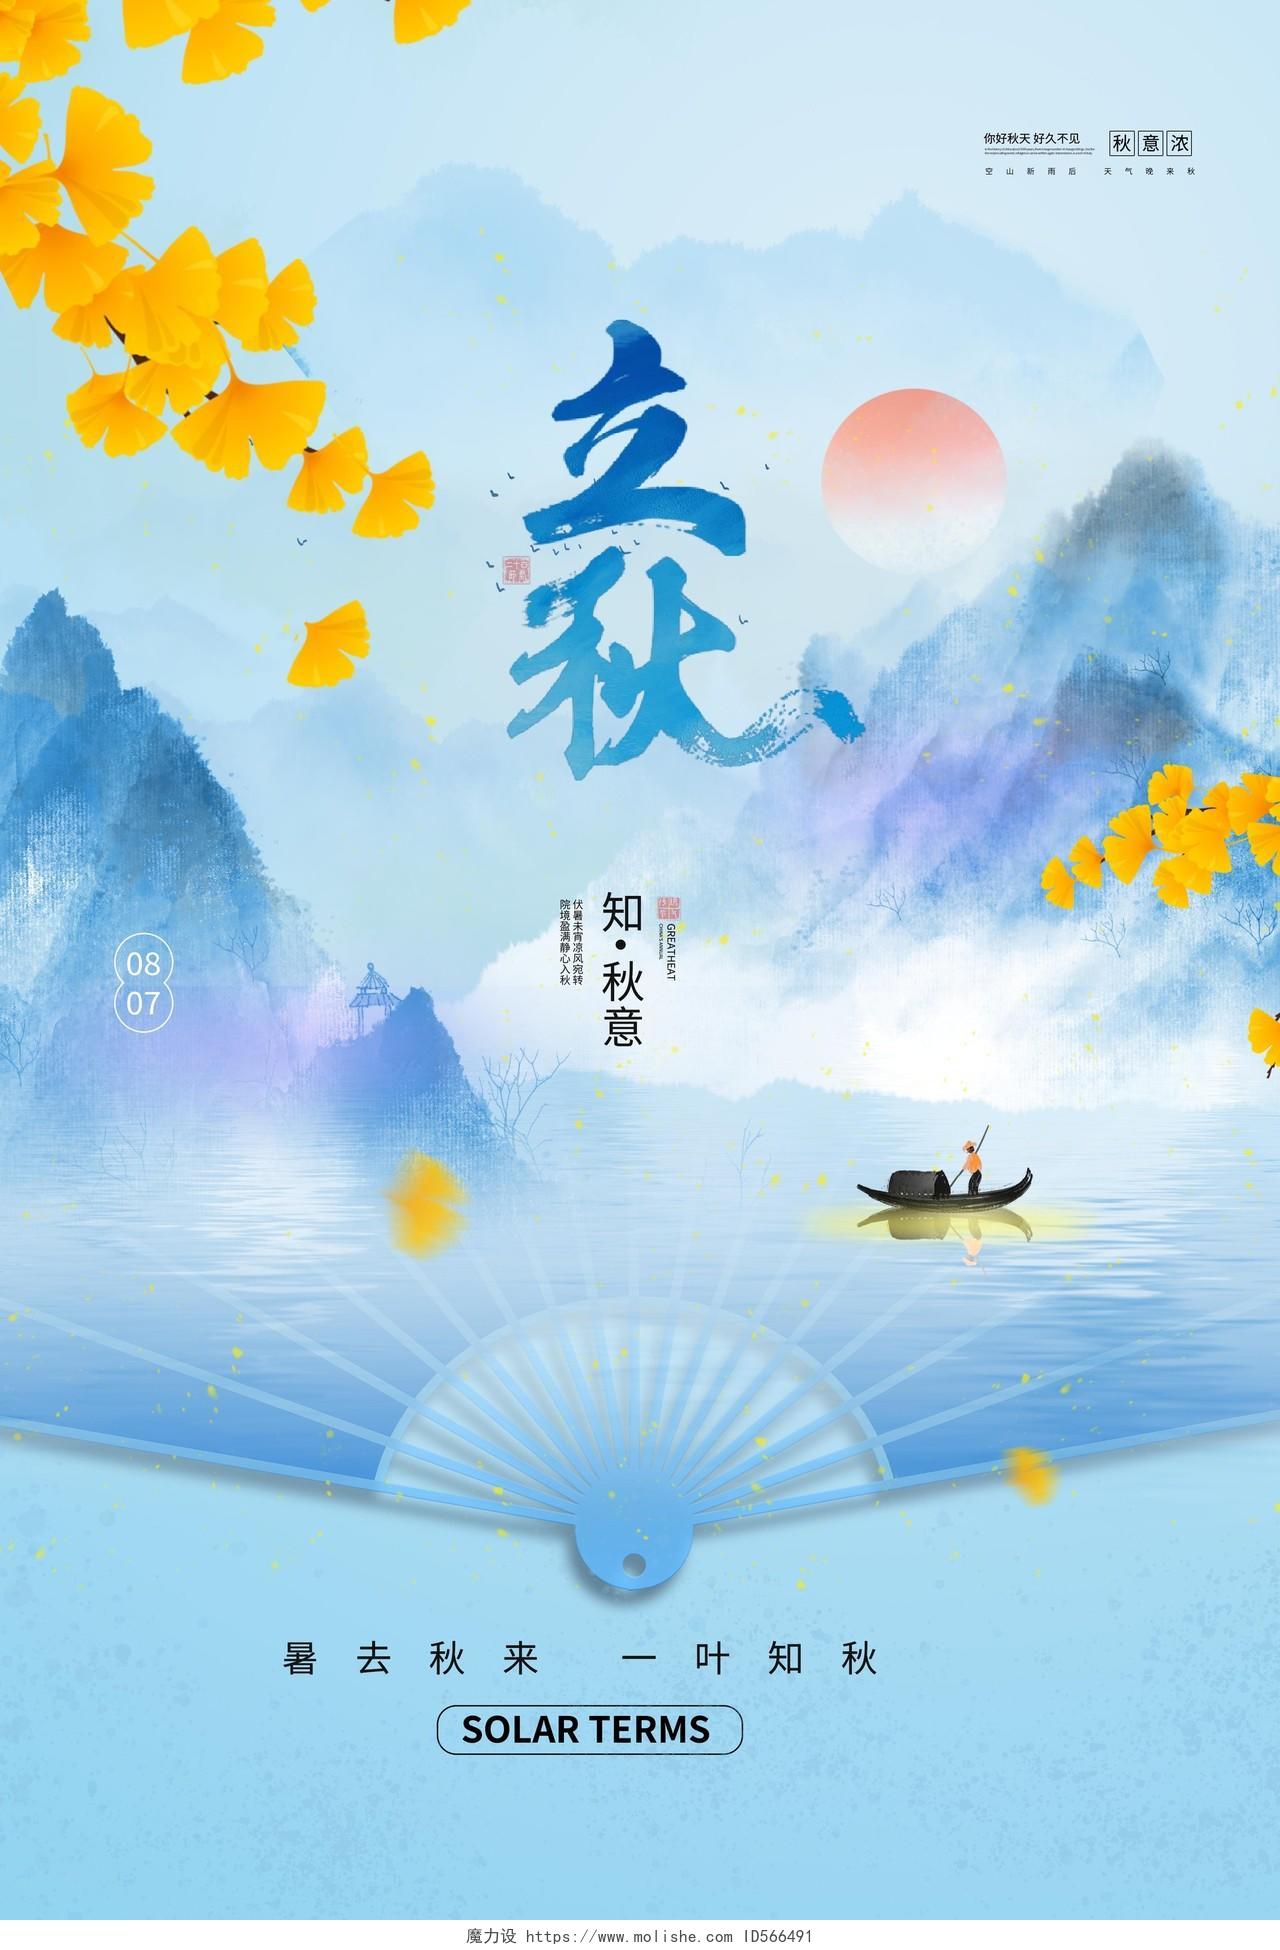 浅蓝色背景创意水彩风格立秋中国二十四节气海报设计立秋海报节日